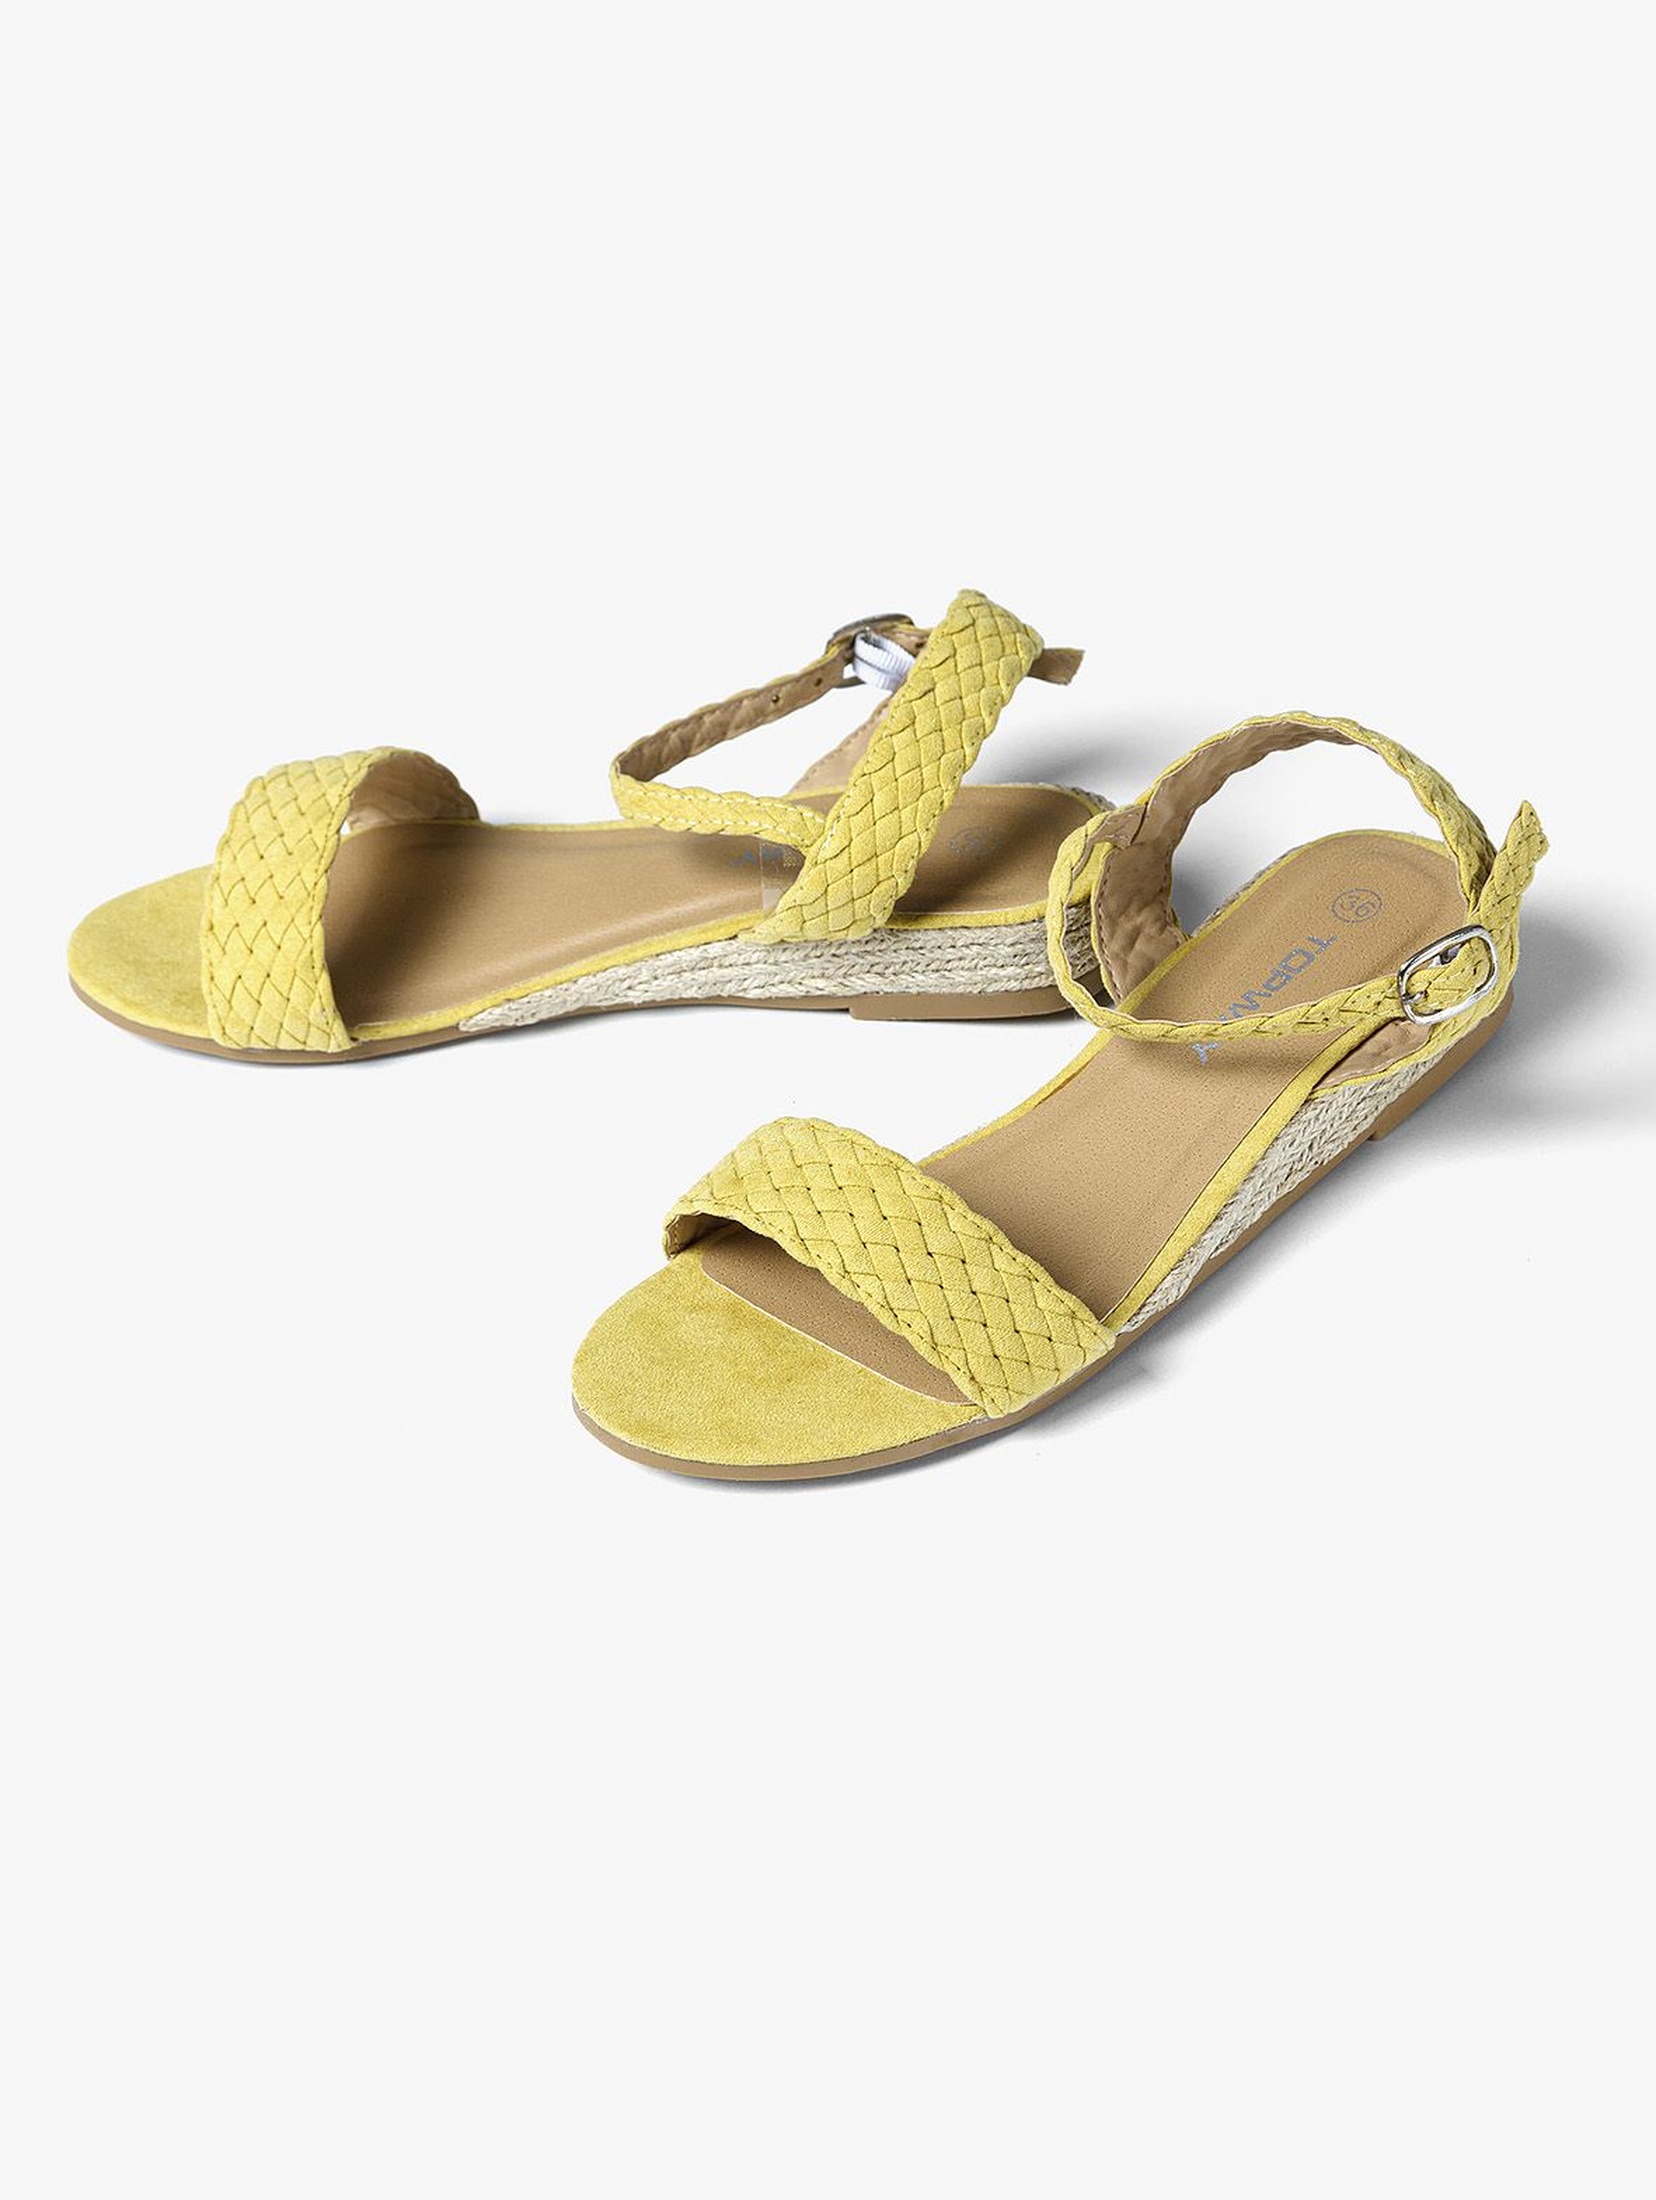 Sandały damskie na koturnie żółte